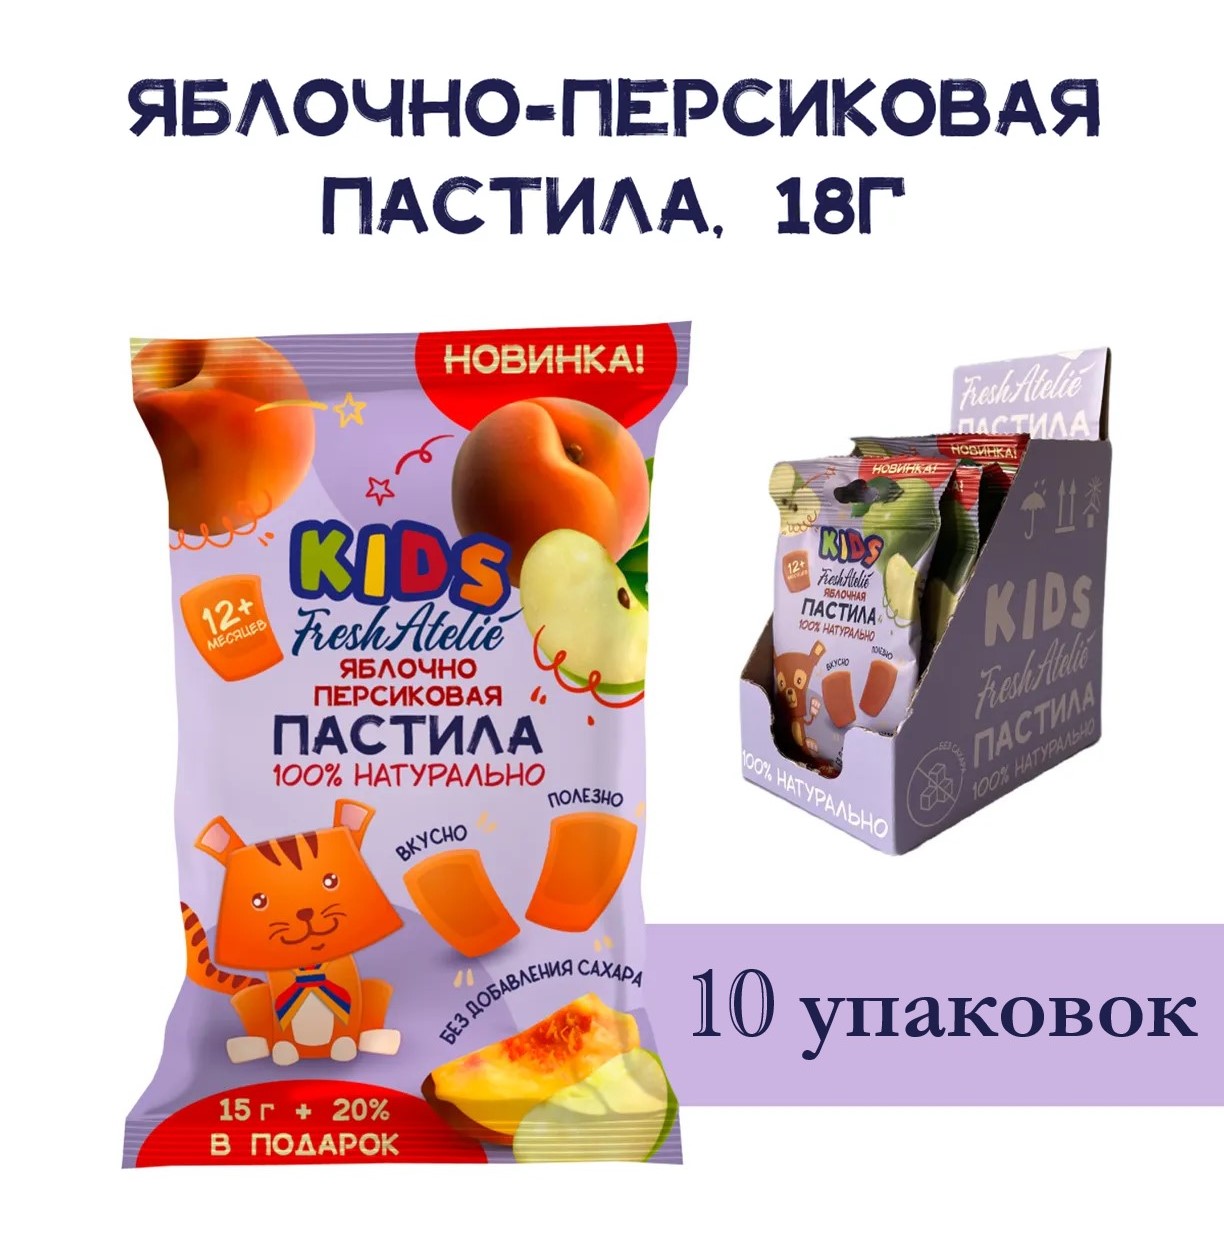 Пастила Яблочно-Персиковая для детей FRESH ATELIE KIDS Пастилки 15гр+20%, 10 упаковок mialt шапка пастила